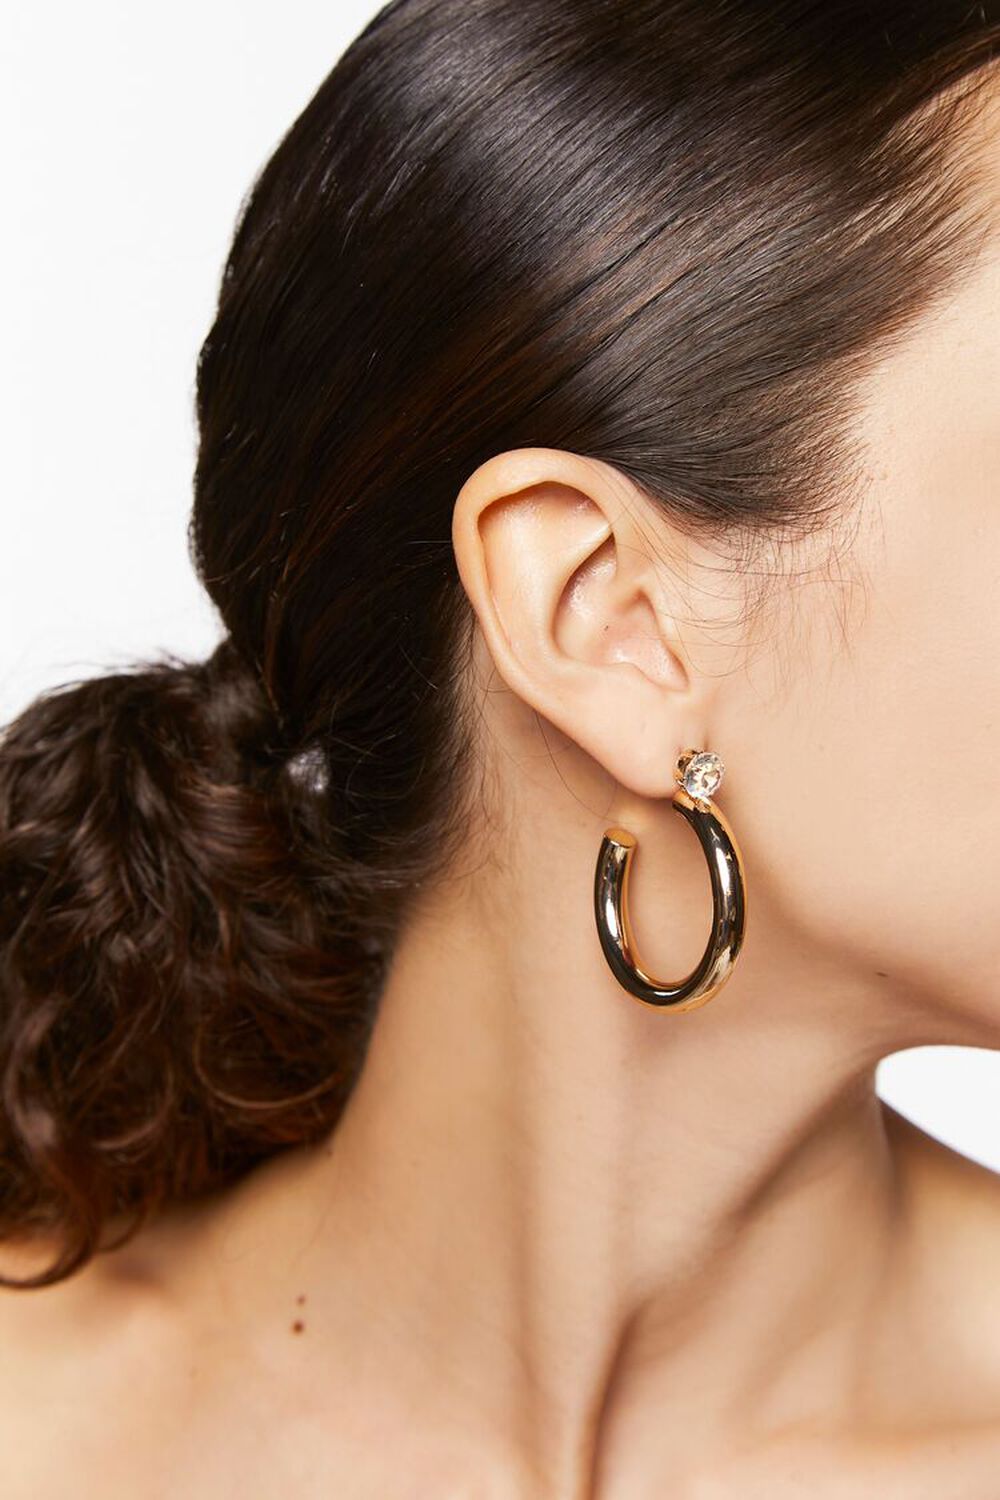 GOLD Rhinestone Stud Hoop Earrings, image 1